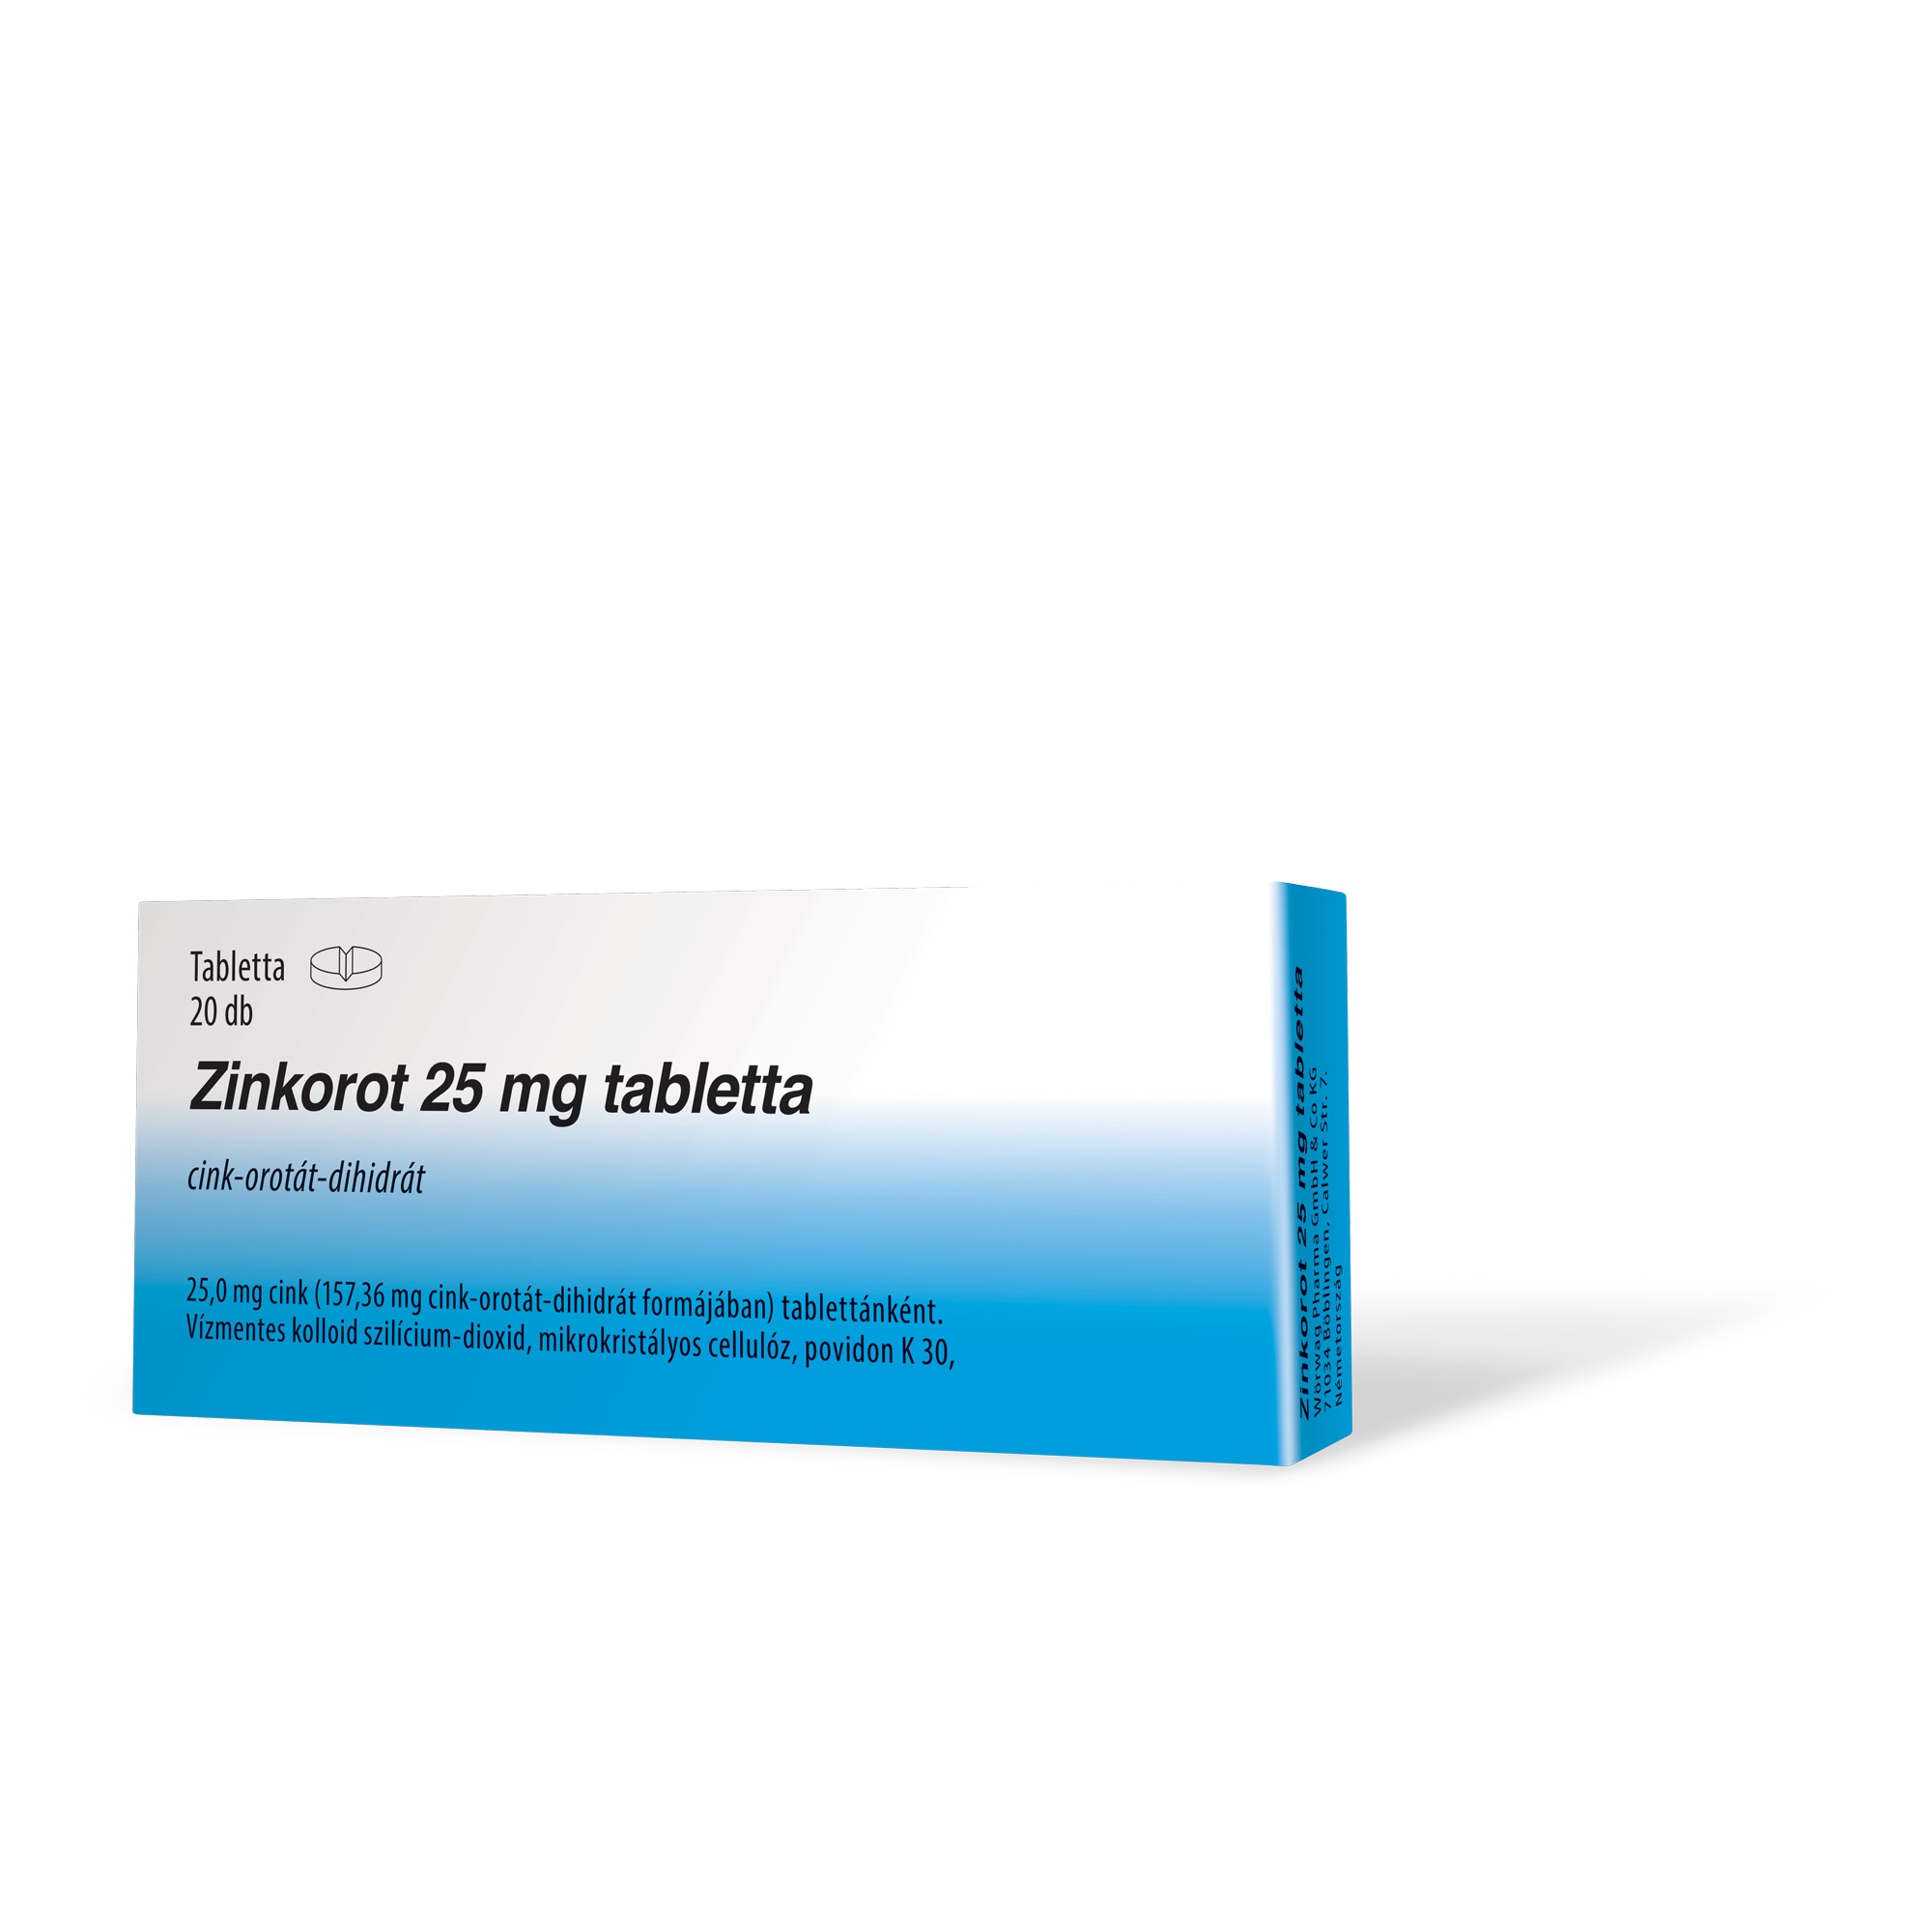 Zinkorot 25 mg tabletta